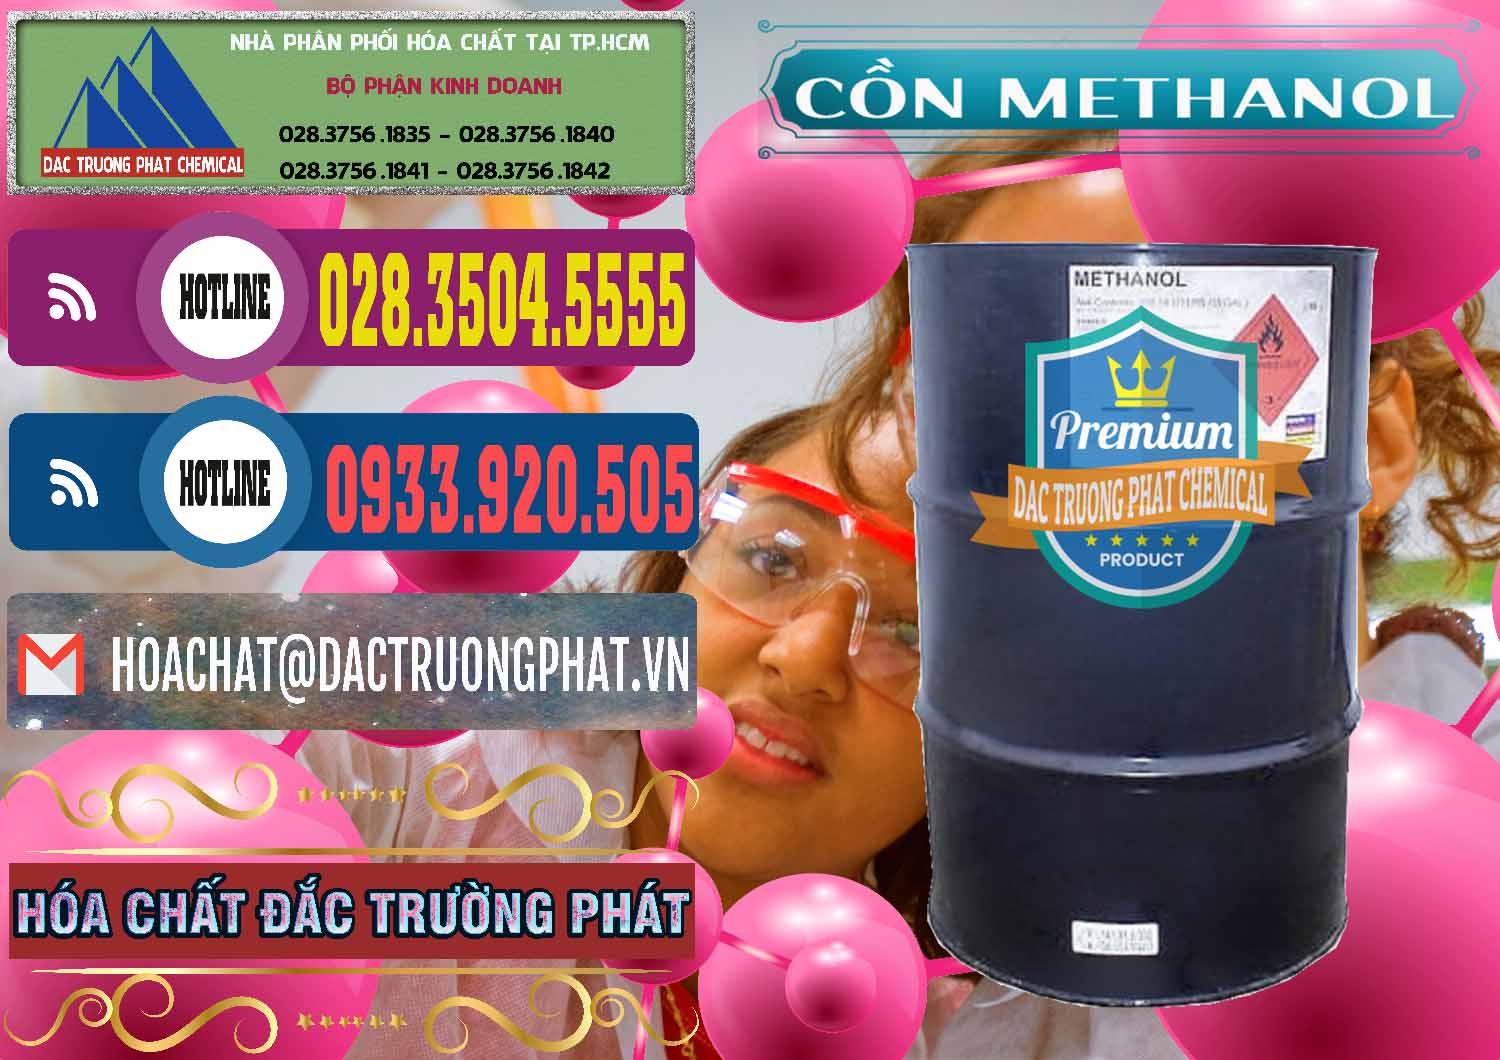 Cty chuyên cung ứng & bán Cồn Methanol - Methyl Alcohol Mã Lai Malaysia - 0331 - Nơi chuyên bán và phân phối hóa chất tại TP.HCM - muabanhoachat.com.vn